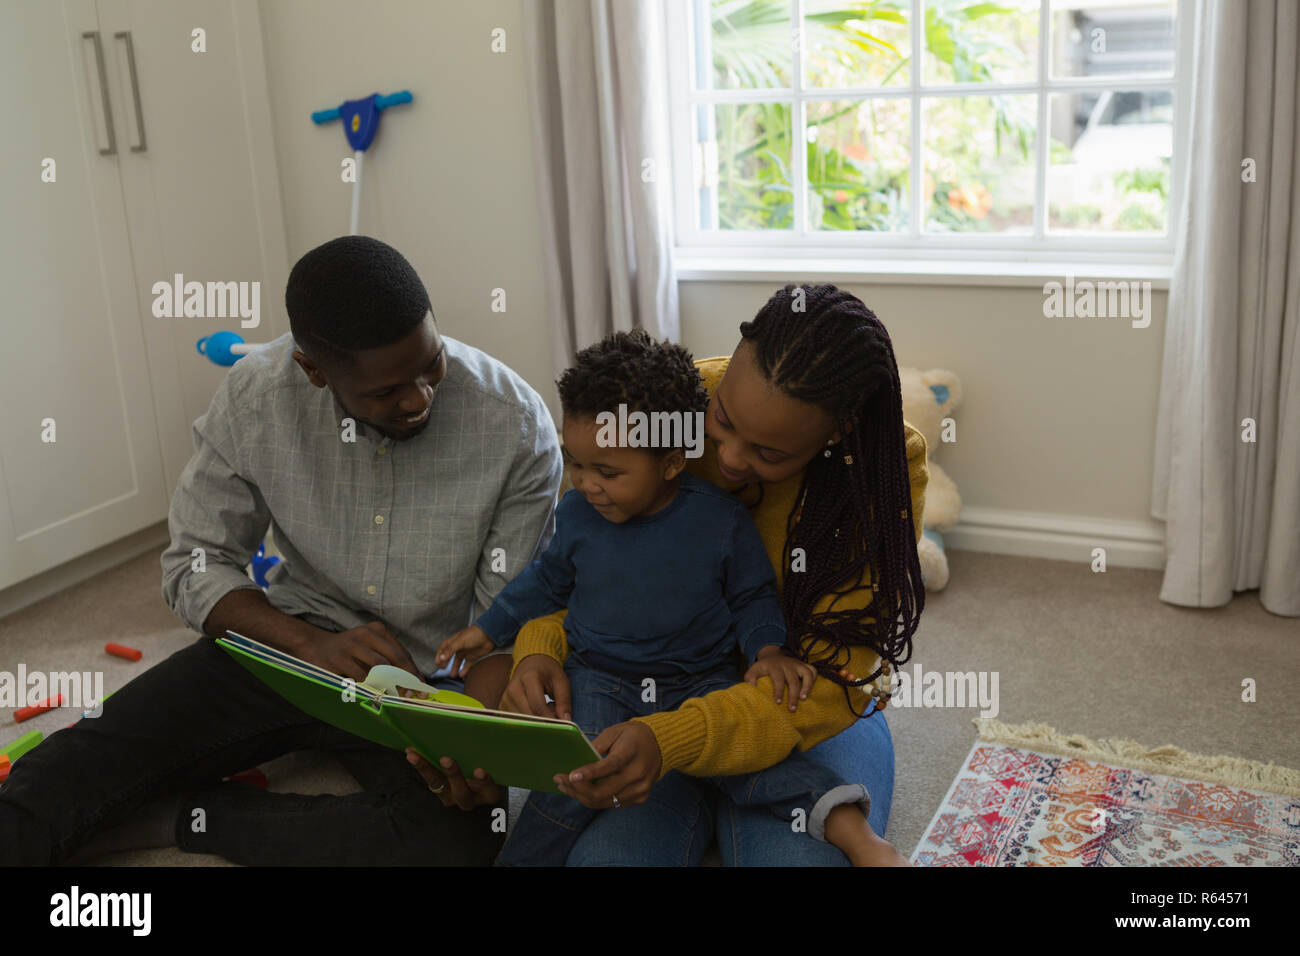 Padres leyendo un libro de imágenes con su hijo en un salón Foto de stock